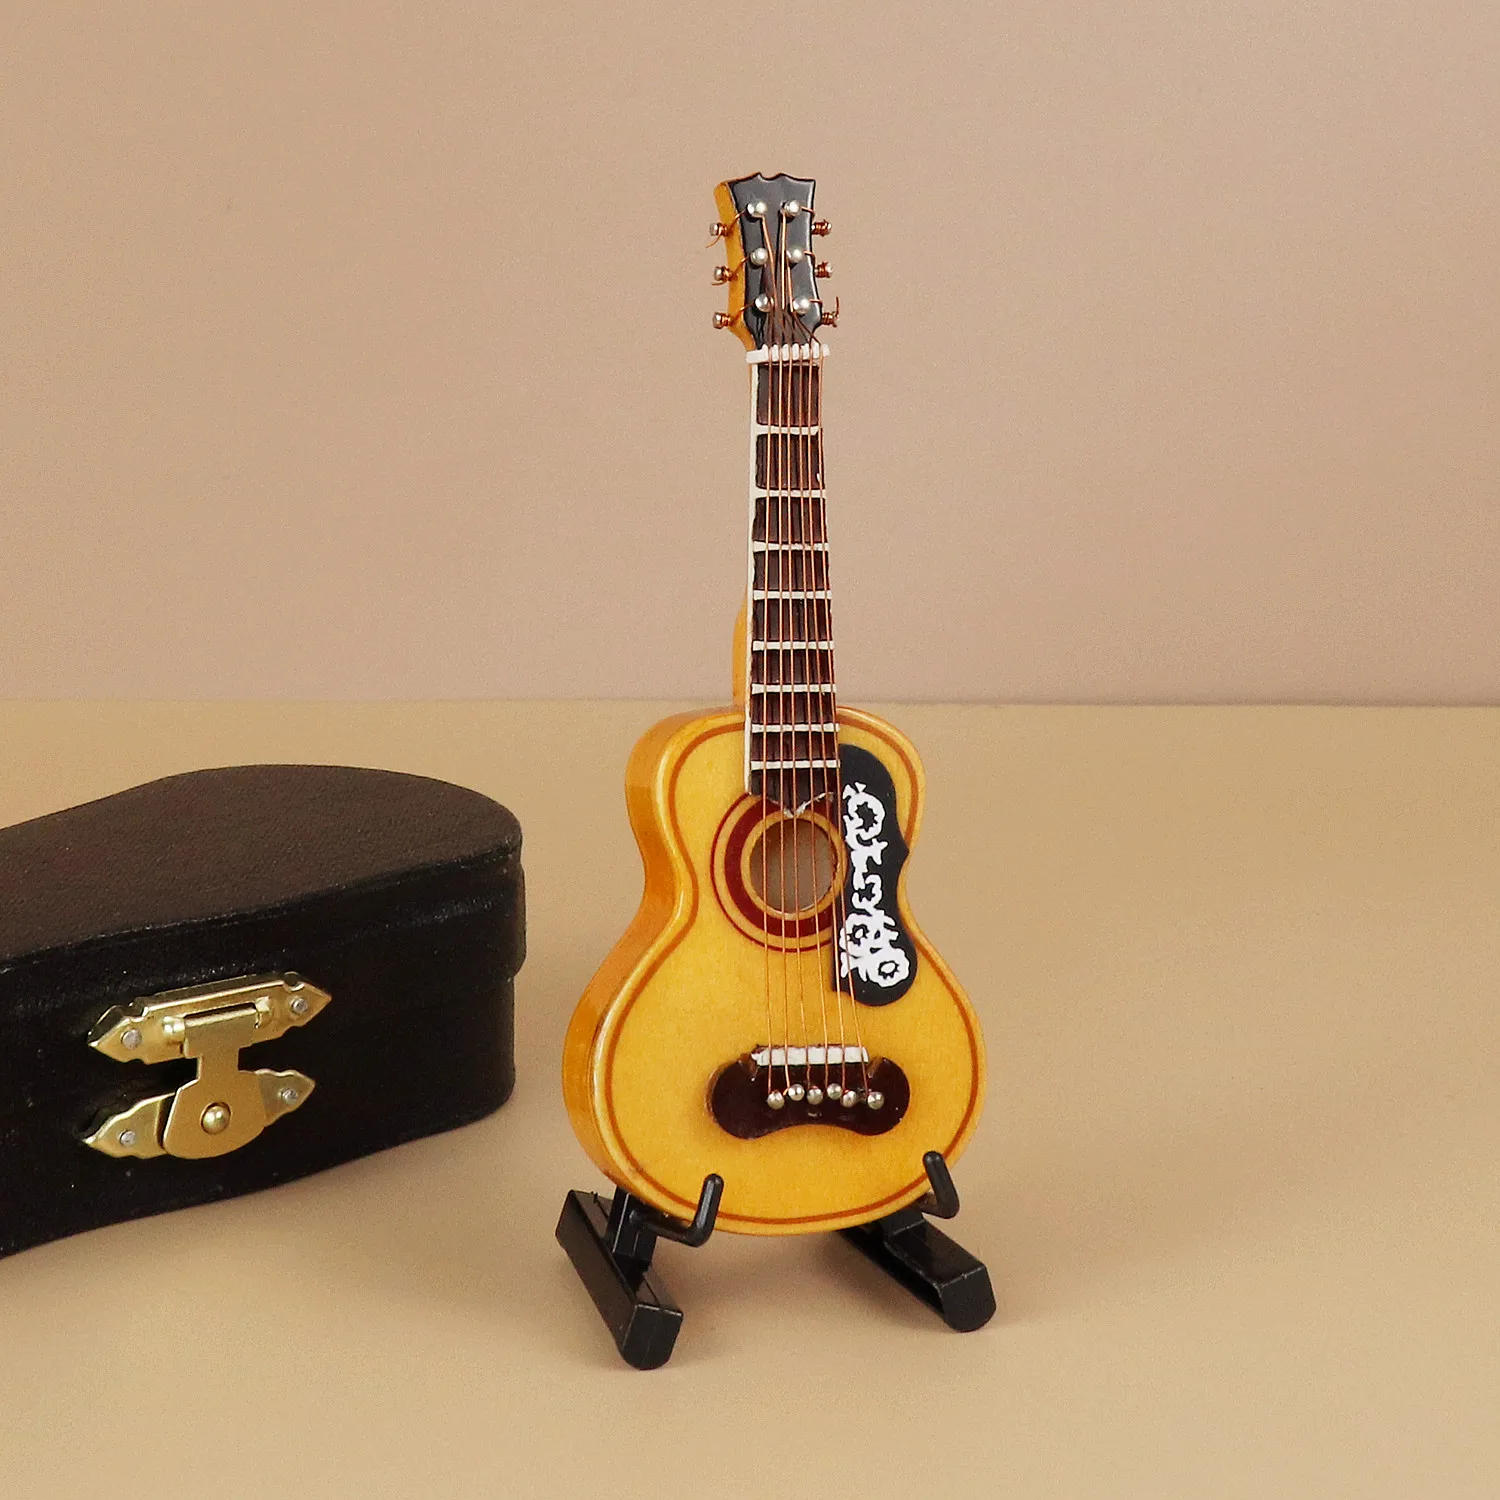 WLGREATSP Guitare Modèle 1:12 Guitare En Bois Miniature Instrument de Musique Musique Dollhouse Décor Meilleur Cadeau Pour Bureau Table Decor 3 Couleur 